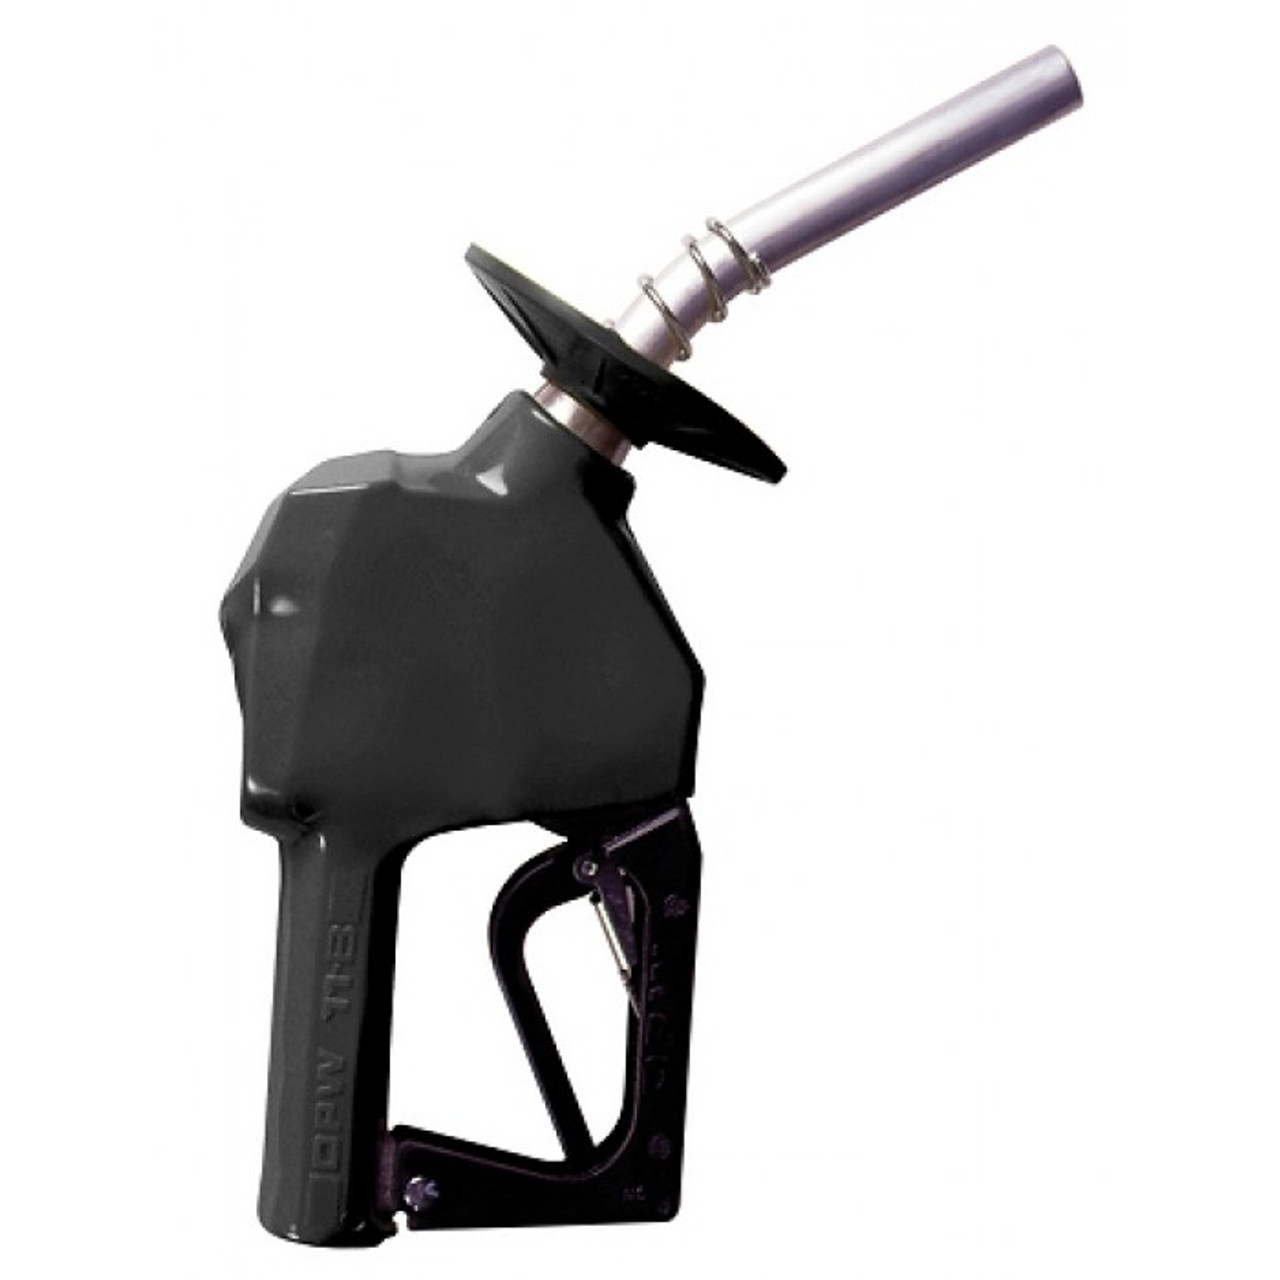 11BP-8400-1P - OPW 11BP Unleaded Fuel Nozzle Black With Splashguard